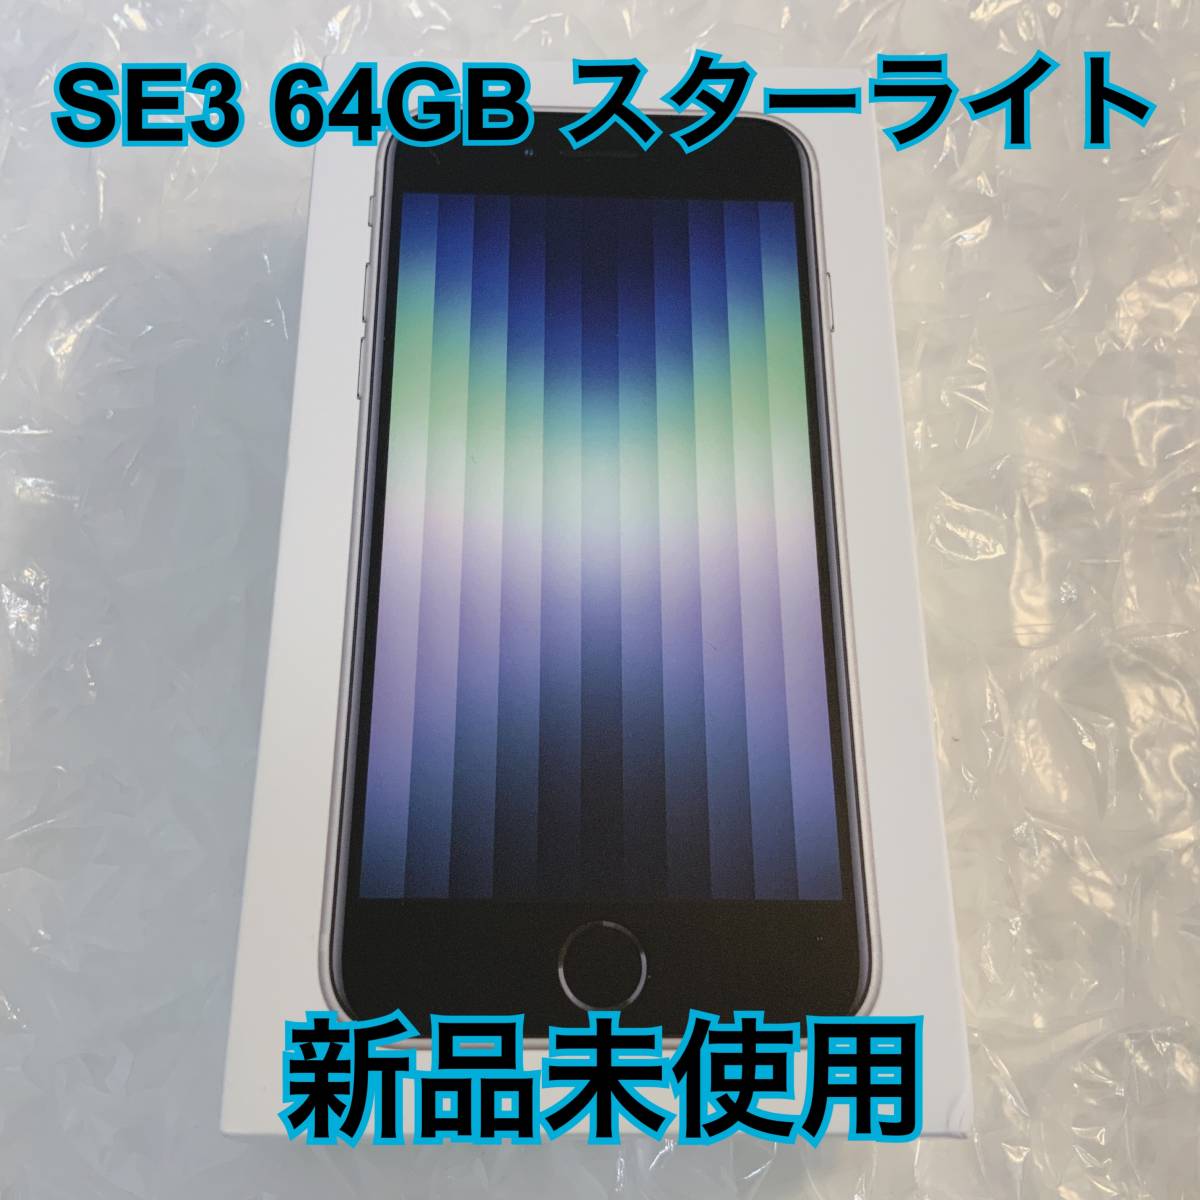 激安超安値 スタアモバイルApple iPhoneSE 3 64GB ミッドナイト 第3